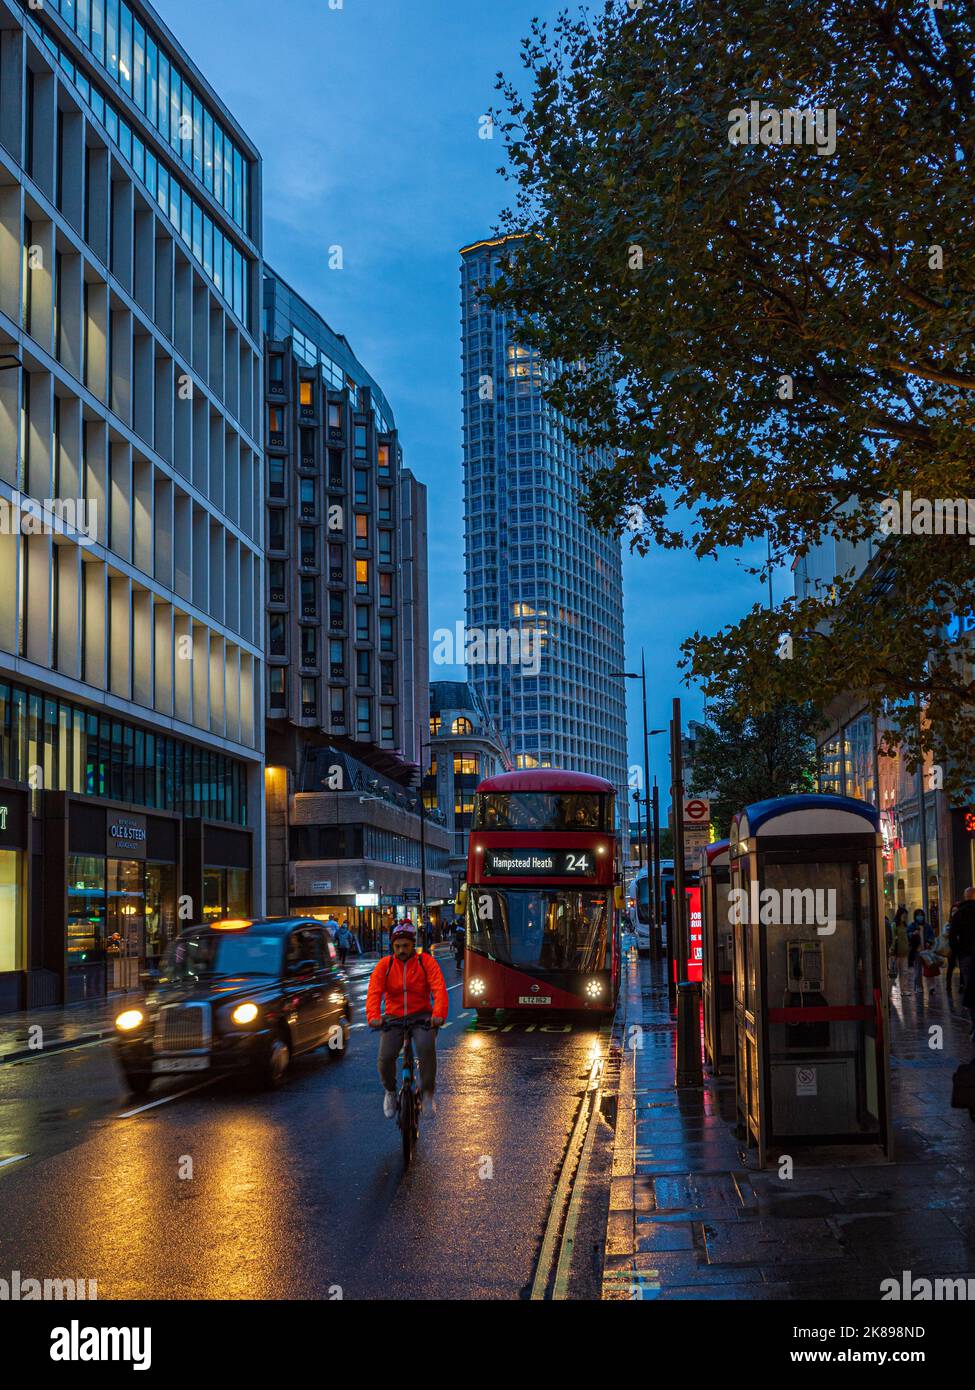 Tottenham Court Road London: Abendlicher Pendlerverkehr auf der Tottenham Court Rd im Zentrum von London, Euston Tower im Hintergrund. Stockfoto